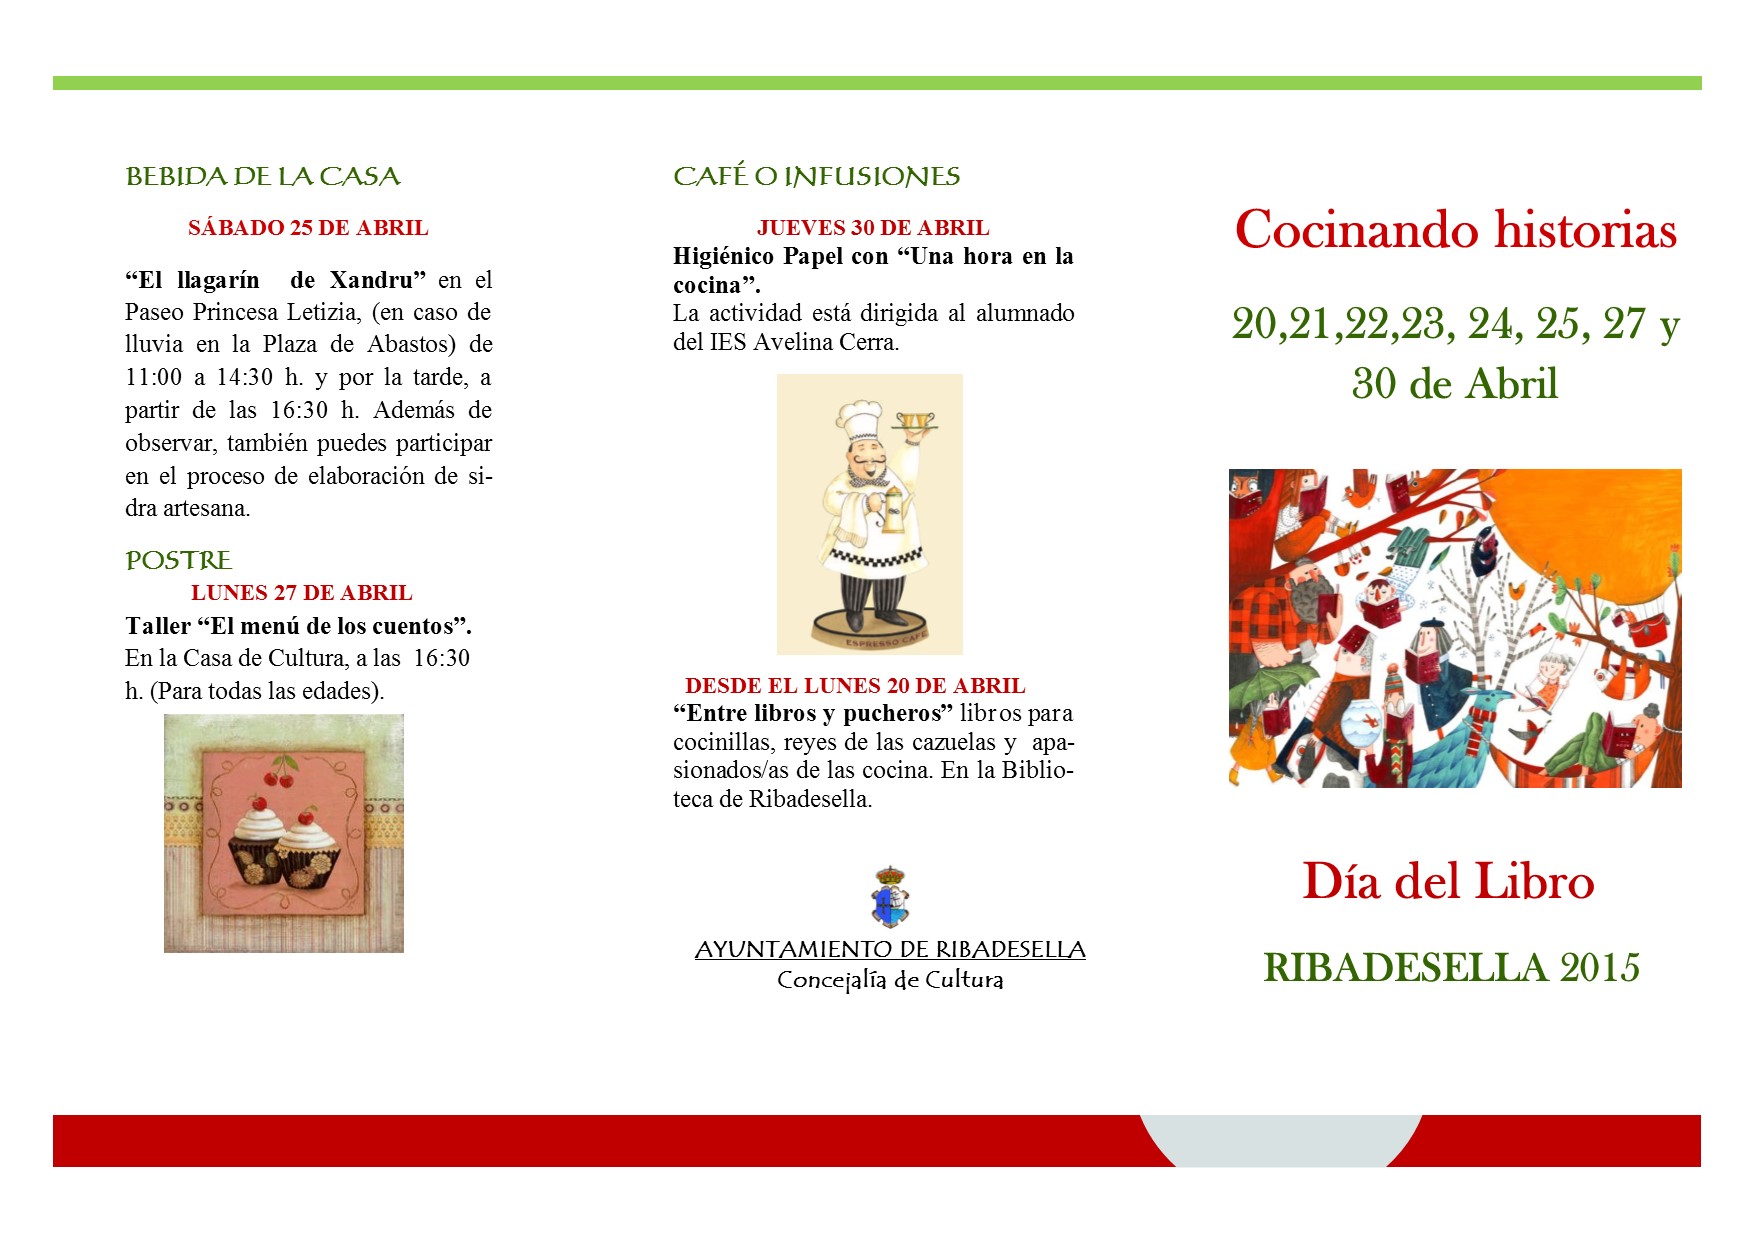 Asturias con niños: Cocinando historias: Día del Libro en Ribadesella